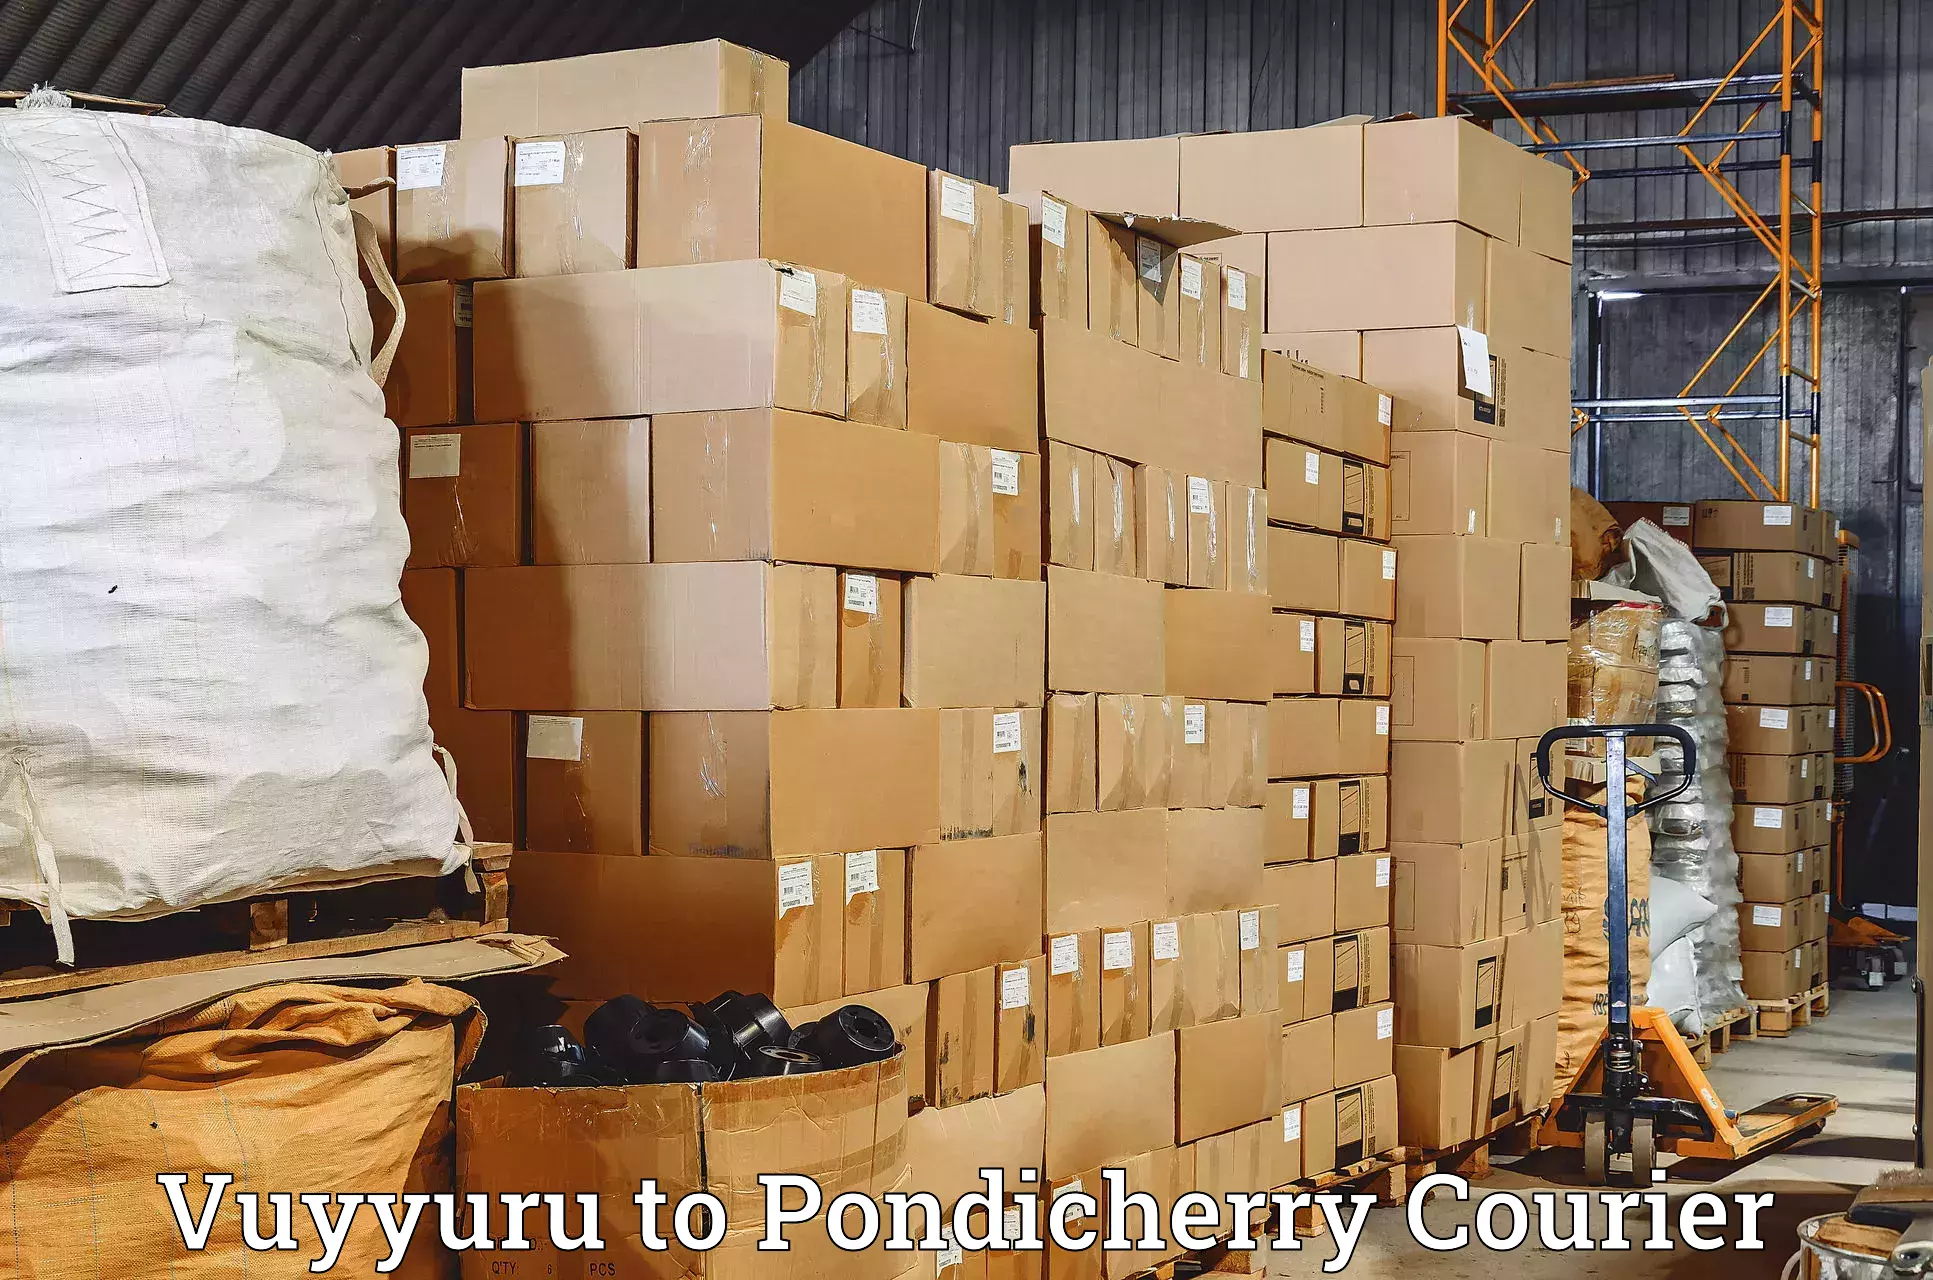 Logistics service provider Vuyyuru to Pondicherry University